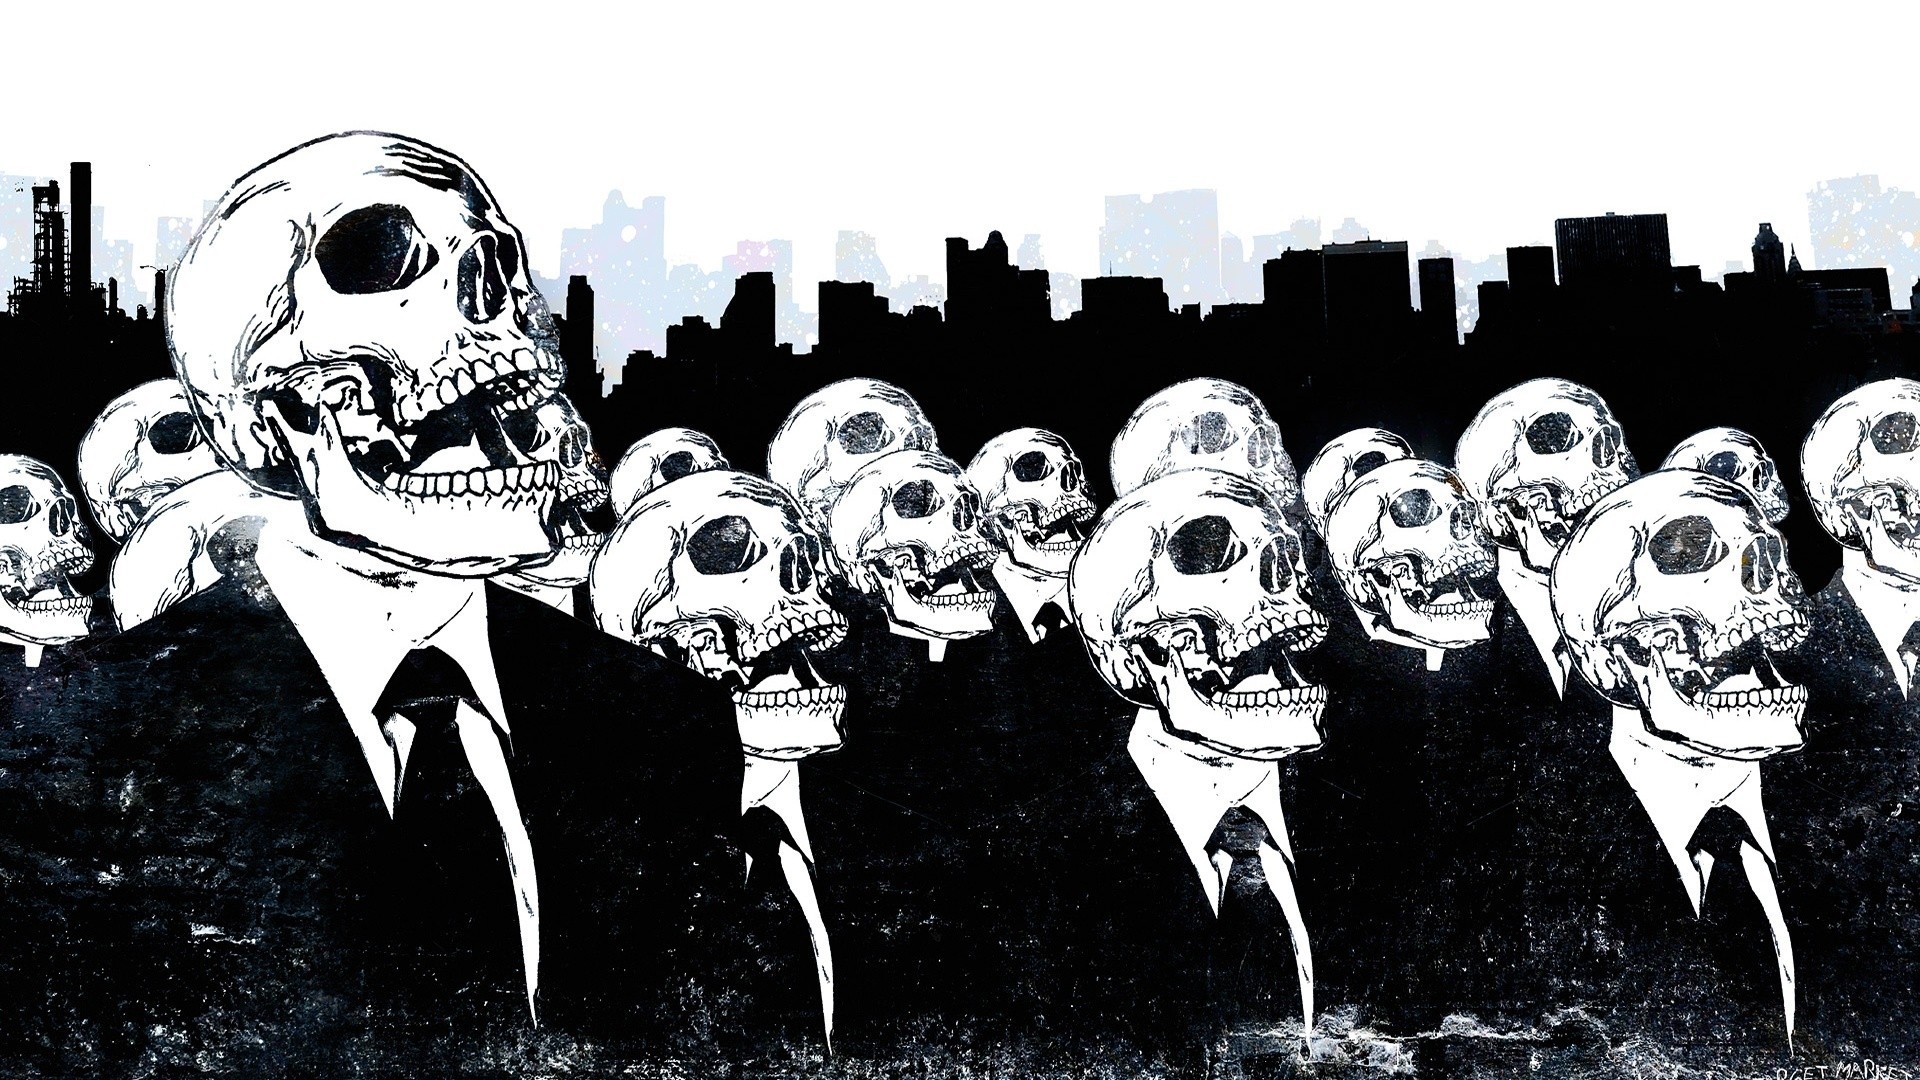 General 1920x1080 skull Alex Cherry suits artwork monochrome skyline tie grunge DeviantArt